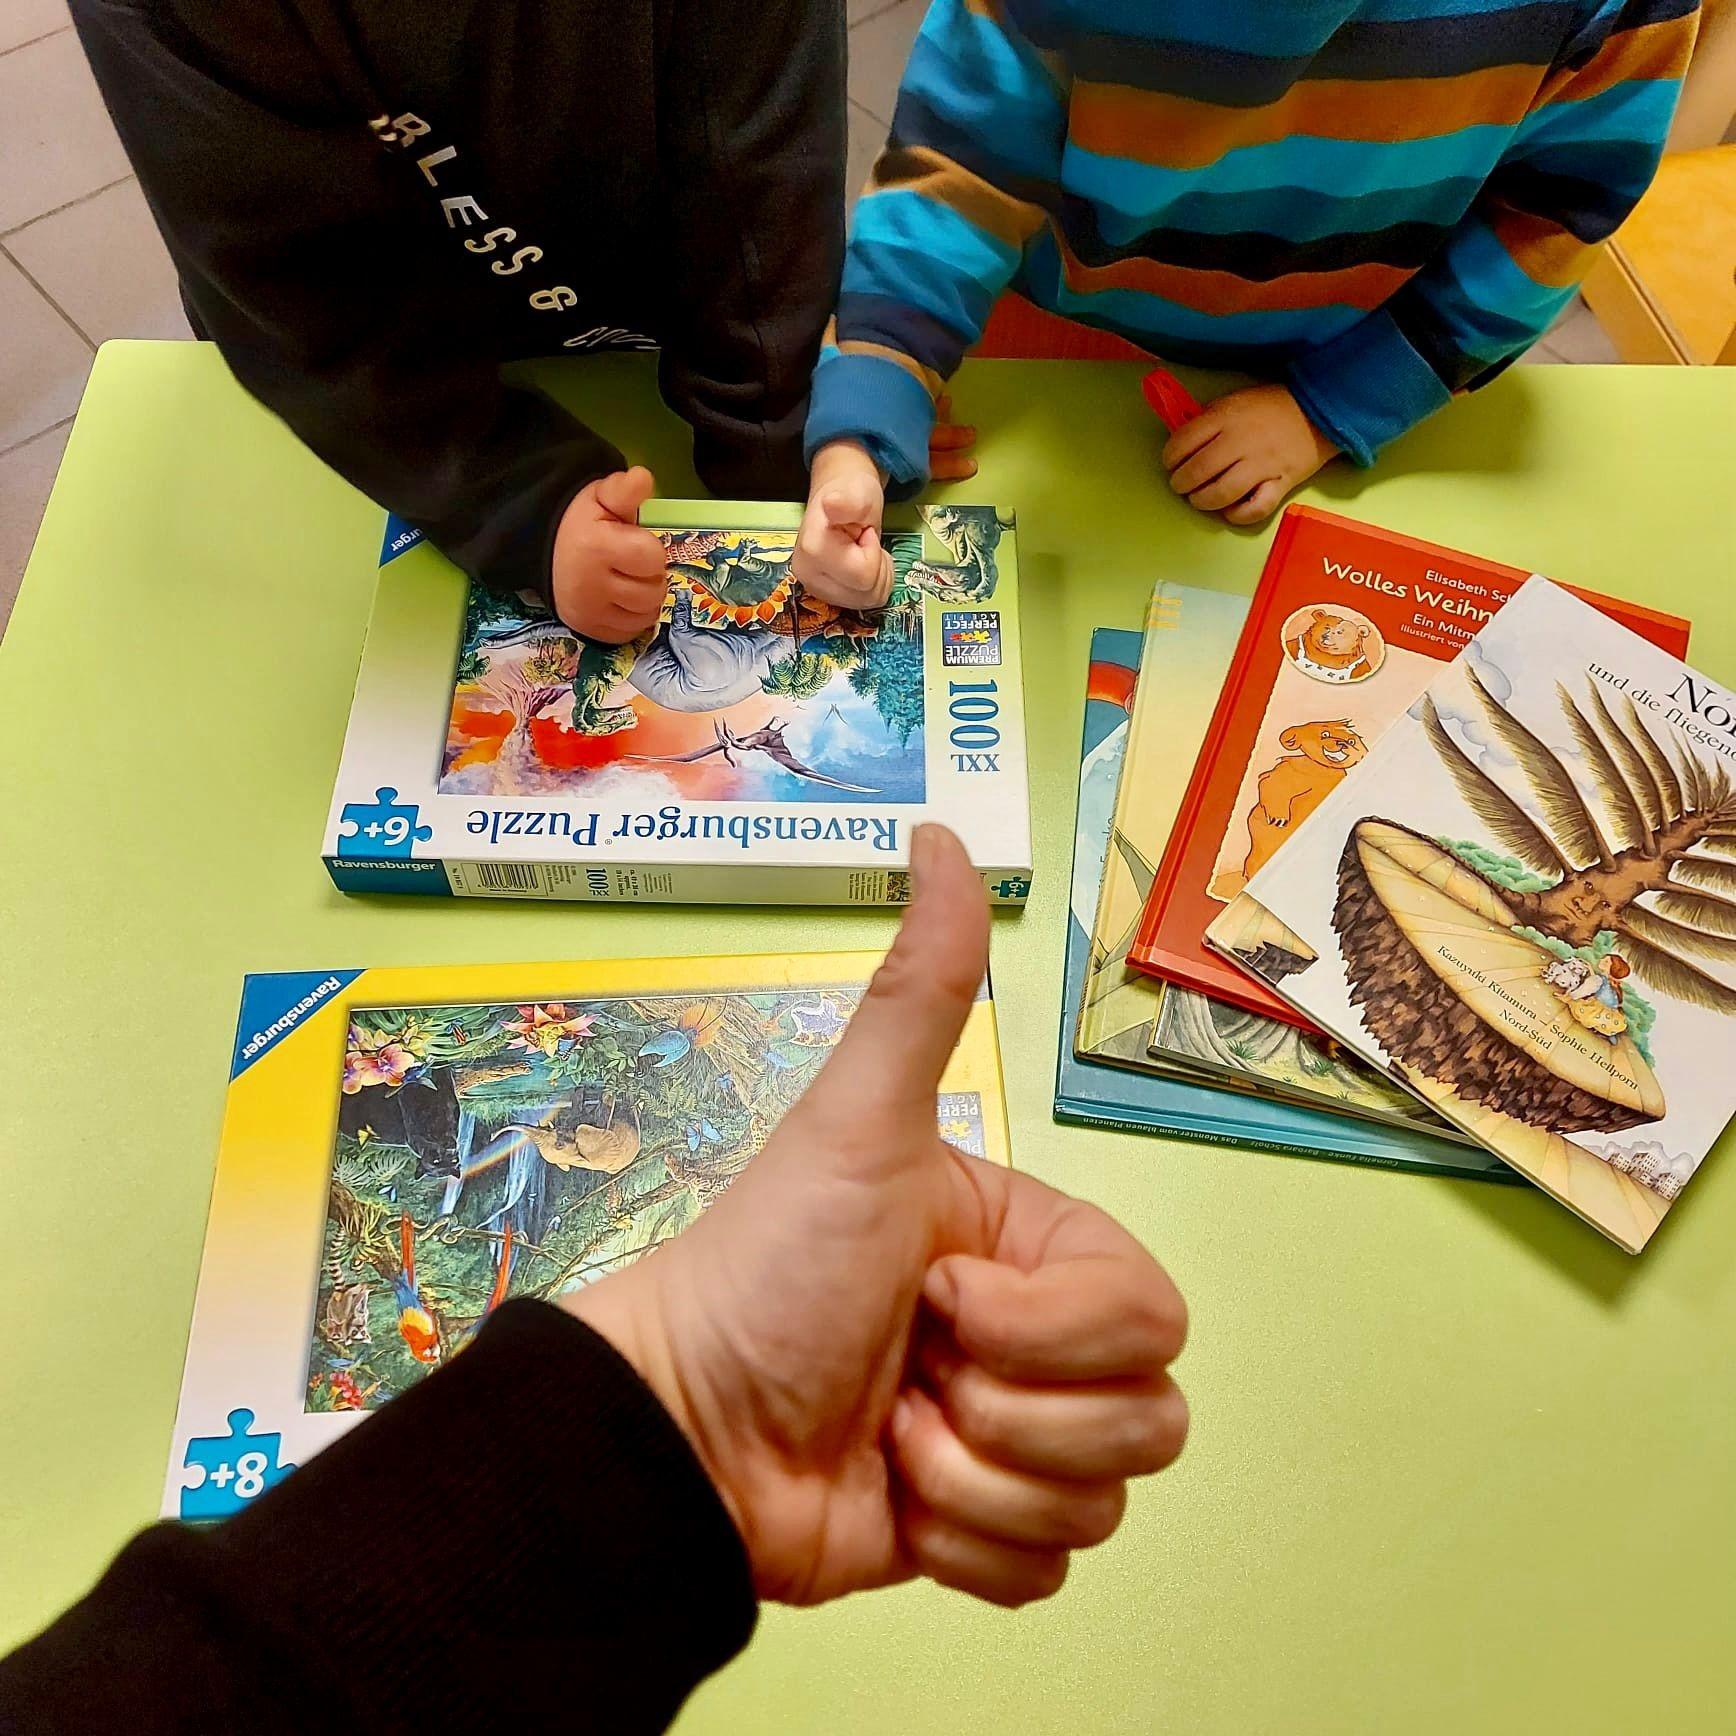 Auf dem Foto sieht man vier Bücher und zwei Puzzles auf einem Tisch liegen, sowie drei Arme von Kindern, die drei hochgestreckten Daumen über die Materialien halten.